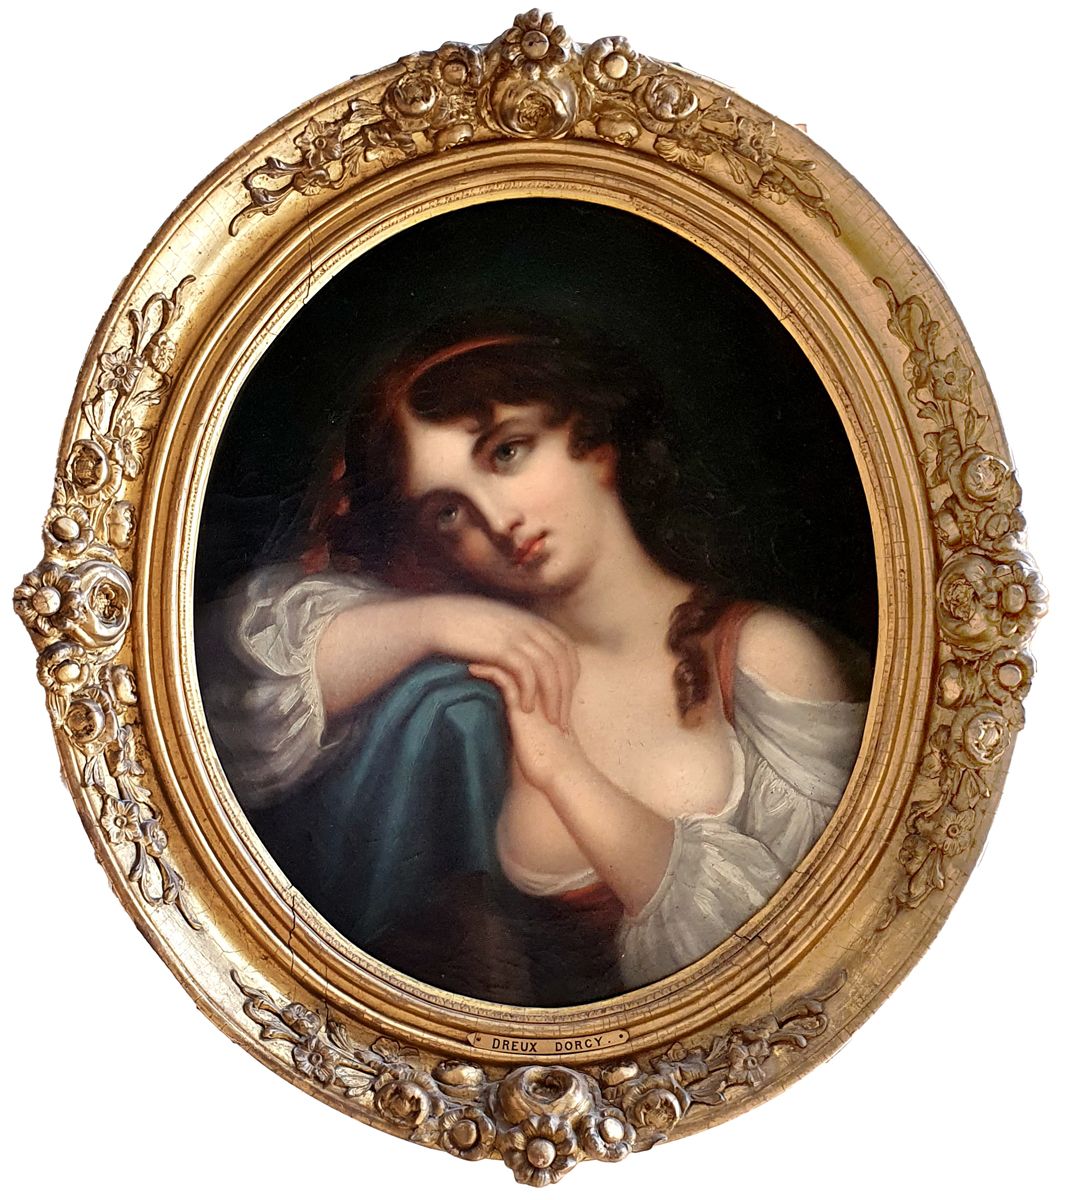 PIERRE-JOSEPH DEDREUX DORCY (1789-1874) Porträt eines jungen Mädchens
Öl auf Lei&hellip;